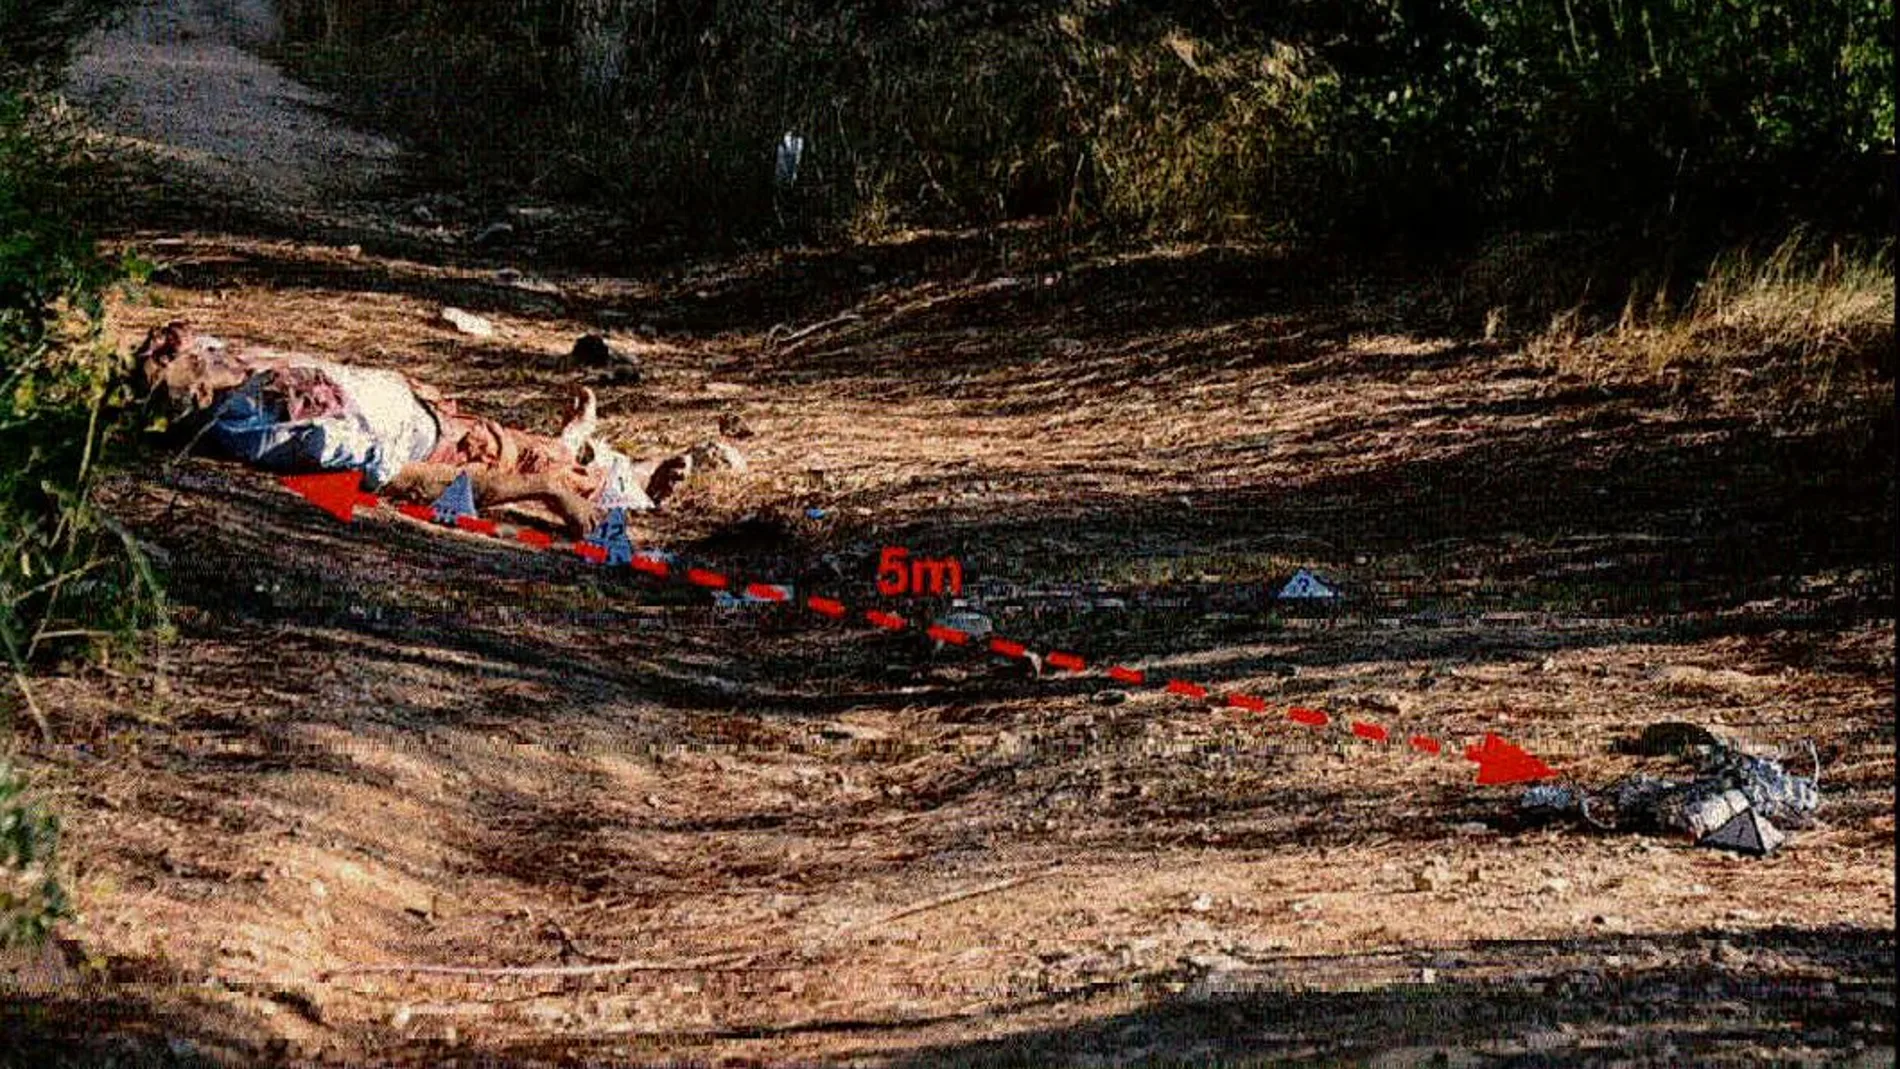 Vista de semiconjunto de la posición del artefacto explosivo simulado respecto al cuerpo del finado referenciado corno indicio 8